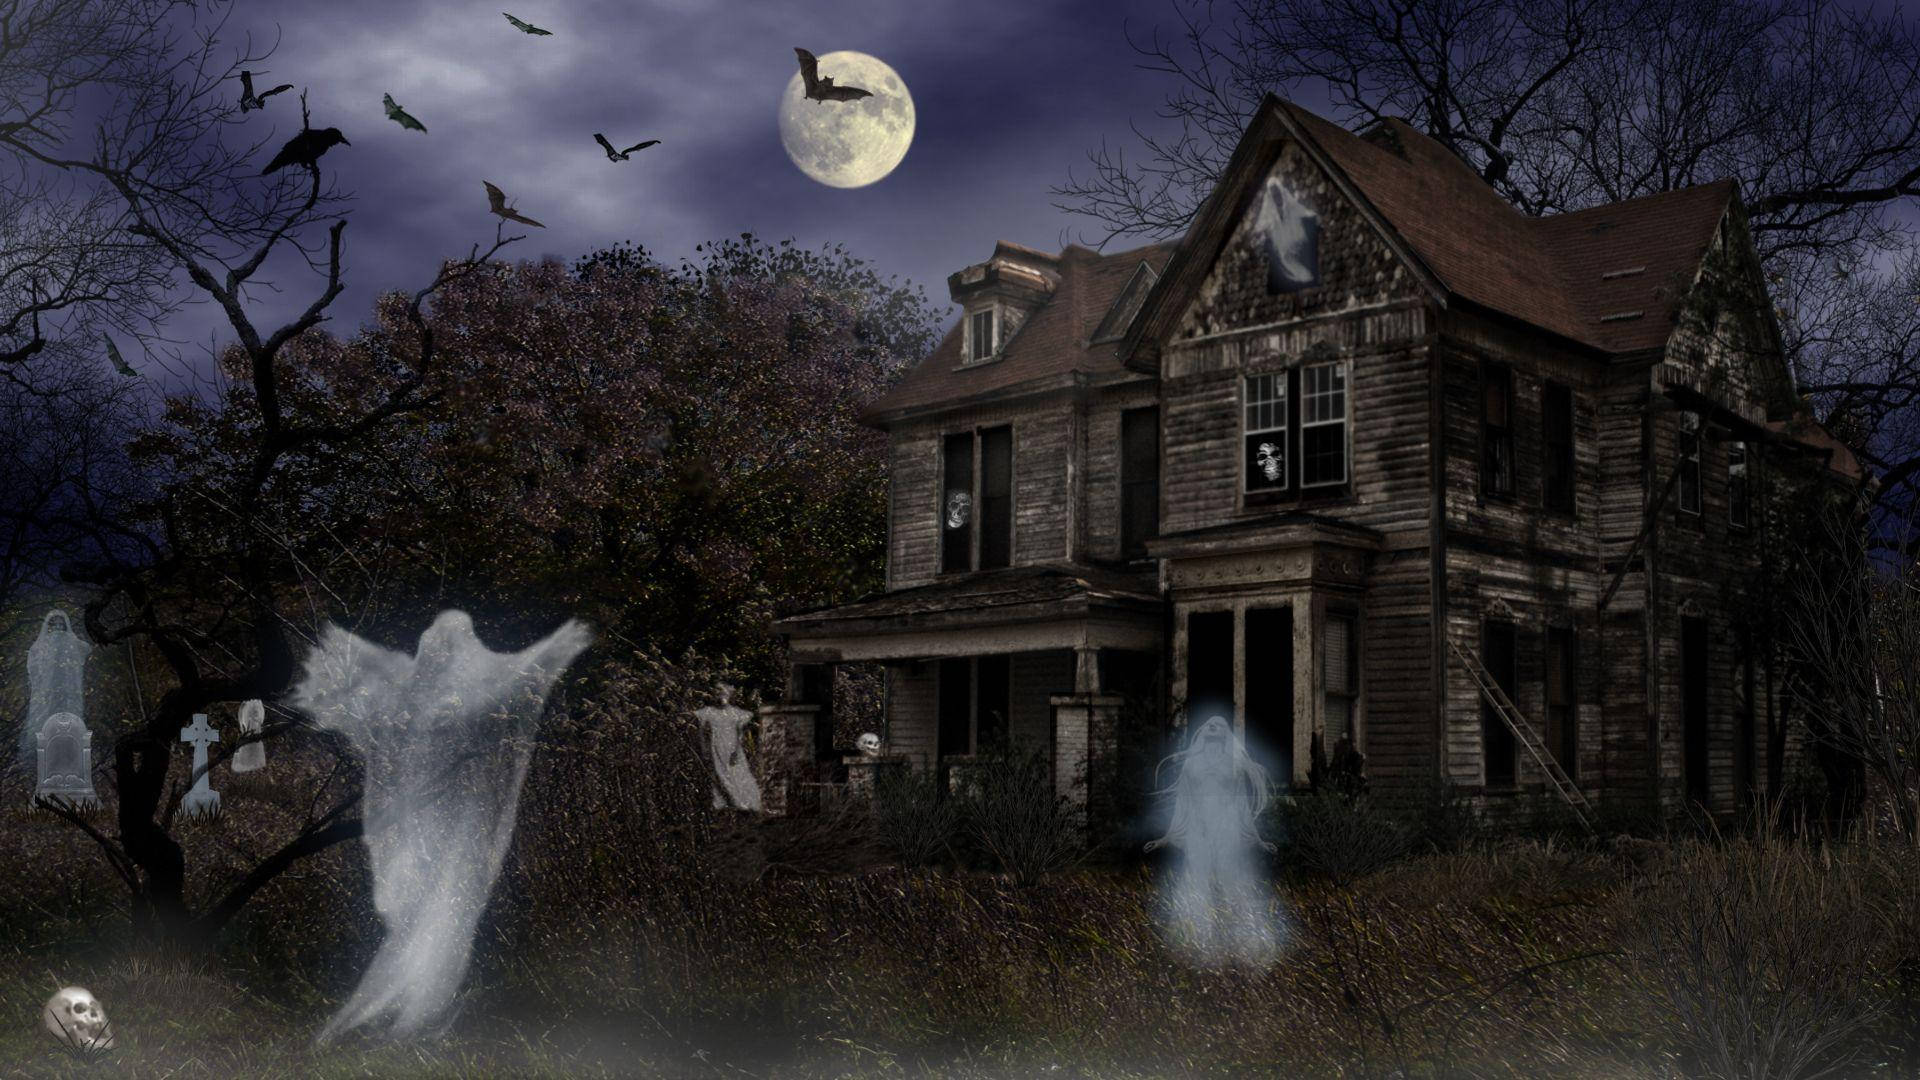 Creepy Haunted House at Night Wallpaper